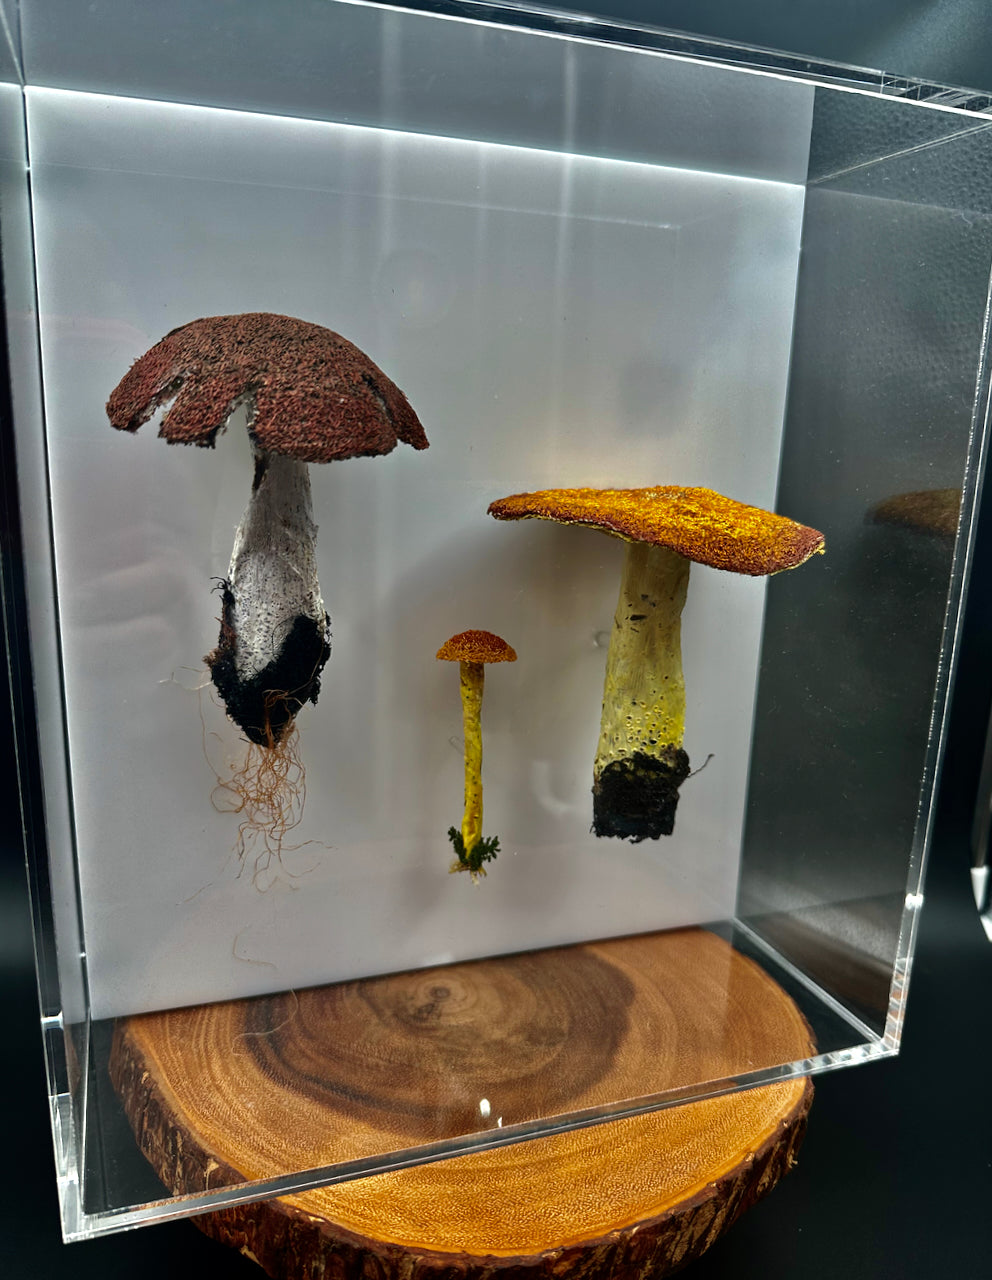 Fungi of New Zealand #2 3D sculpture.